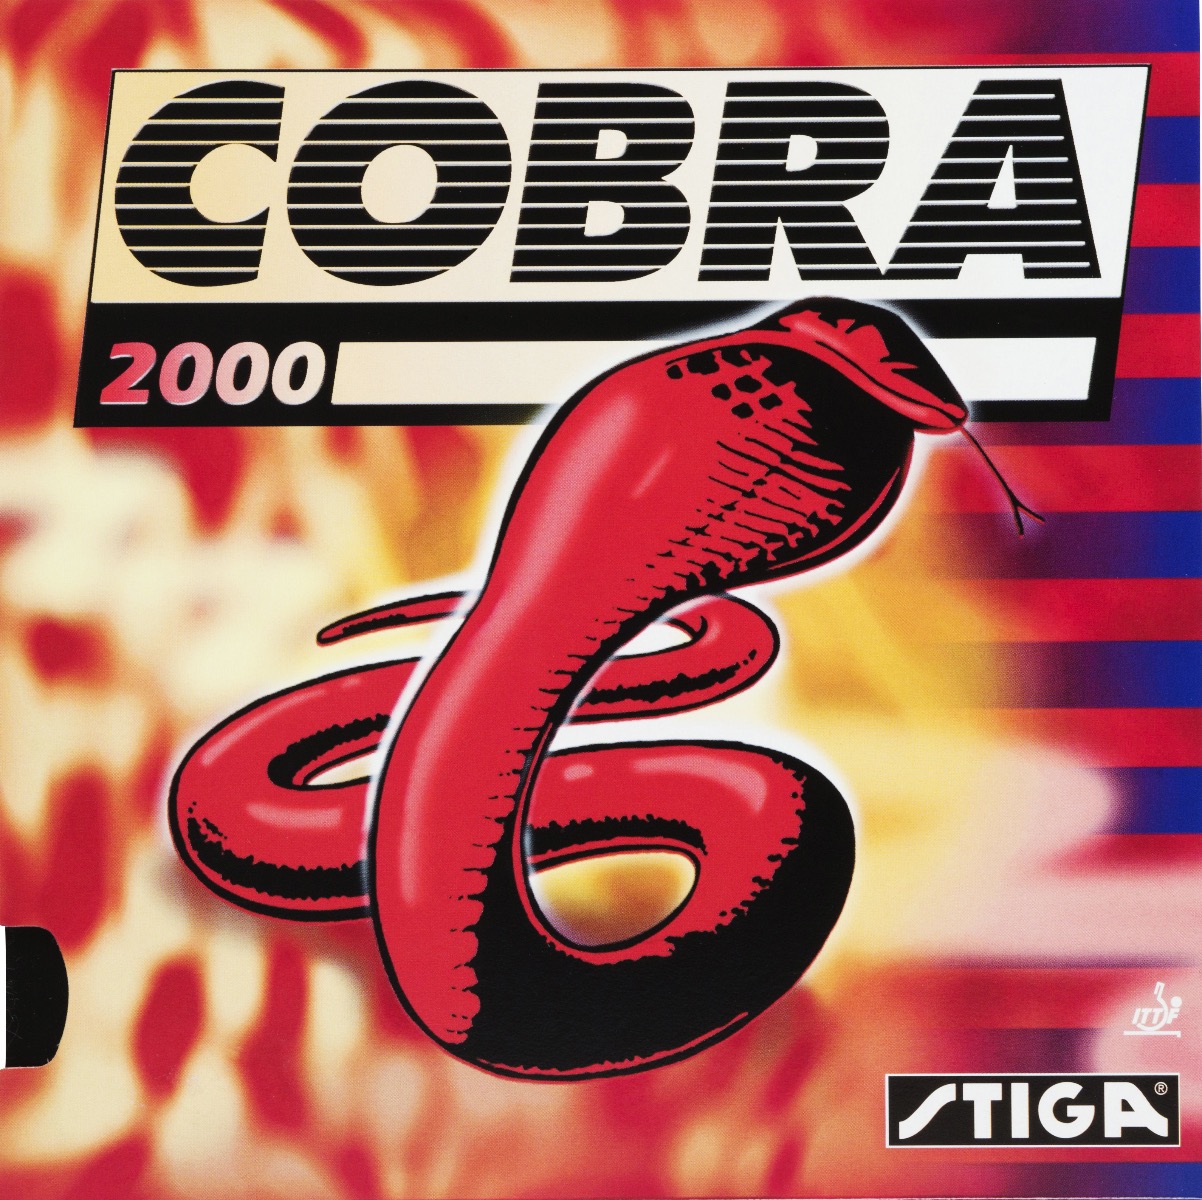 Stiga Cobra 2000